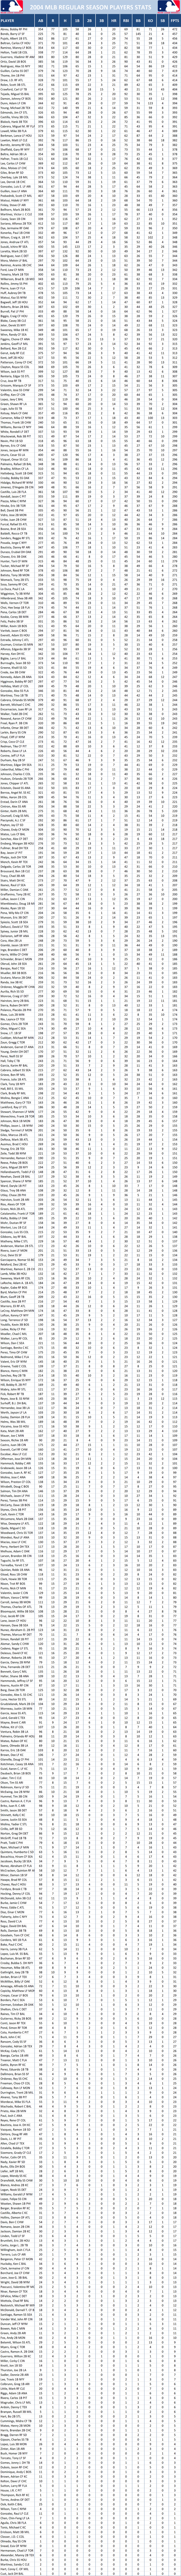 2004 Major League Baseball Pool Season Player Stats